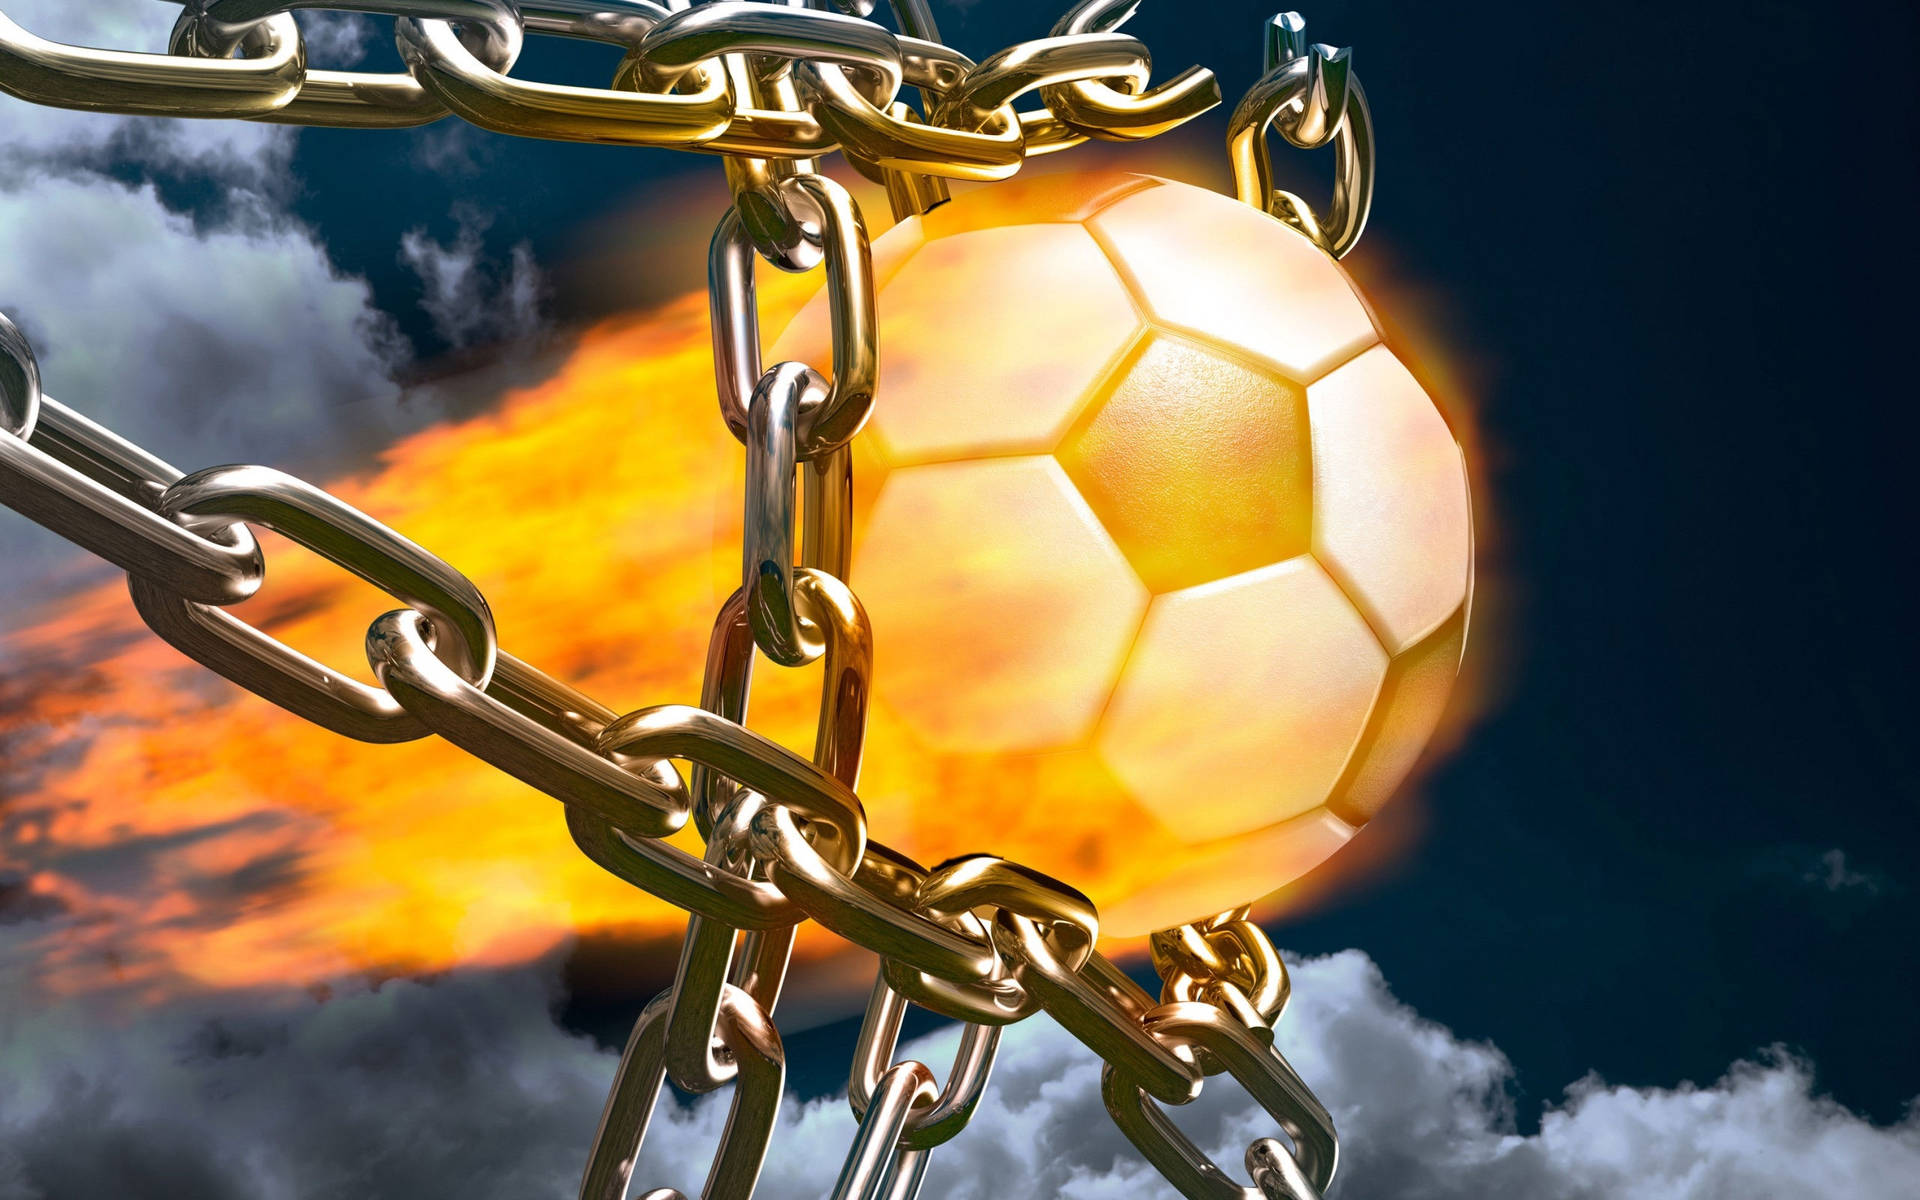 Cool Fodbold Fiery Effect Wallpaper